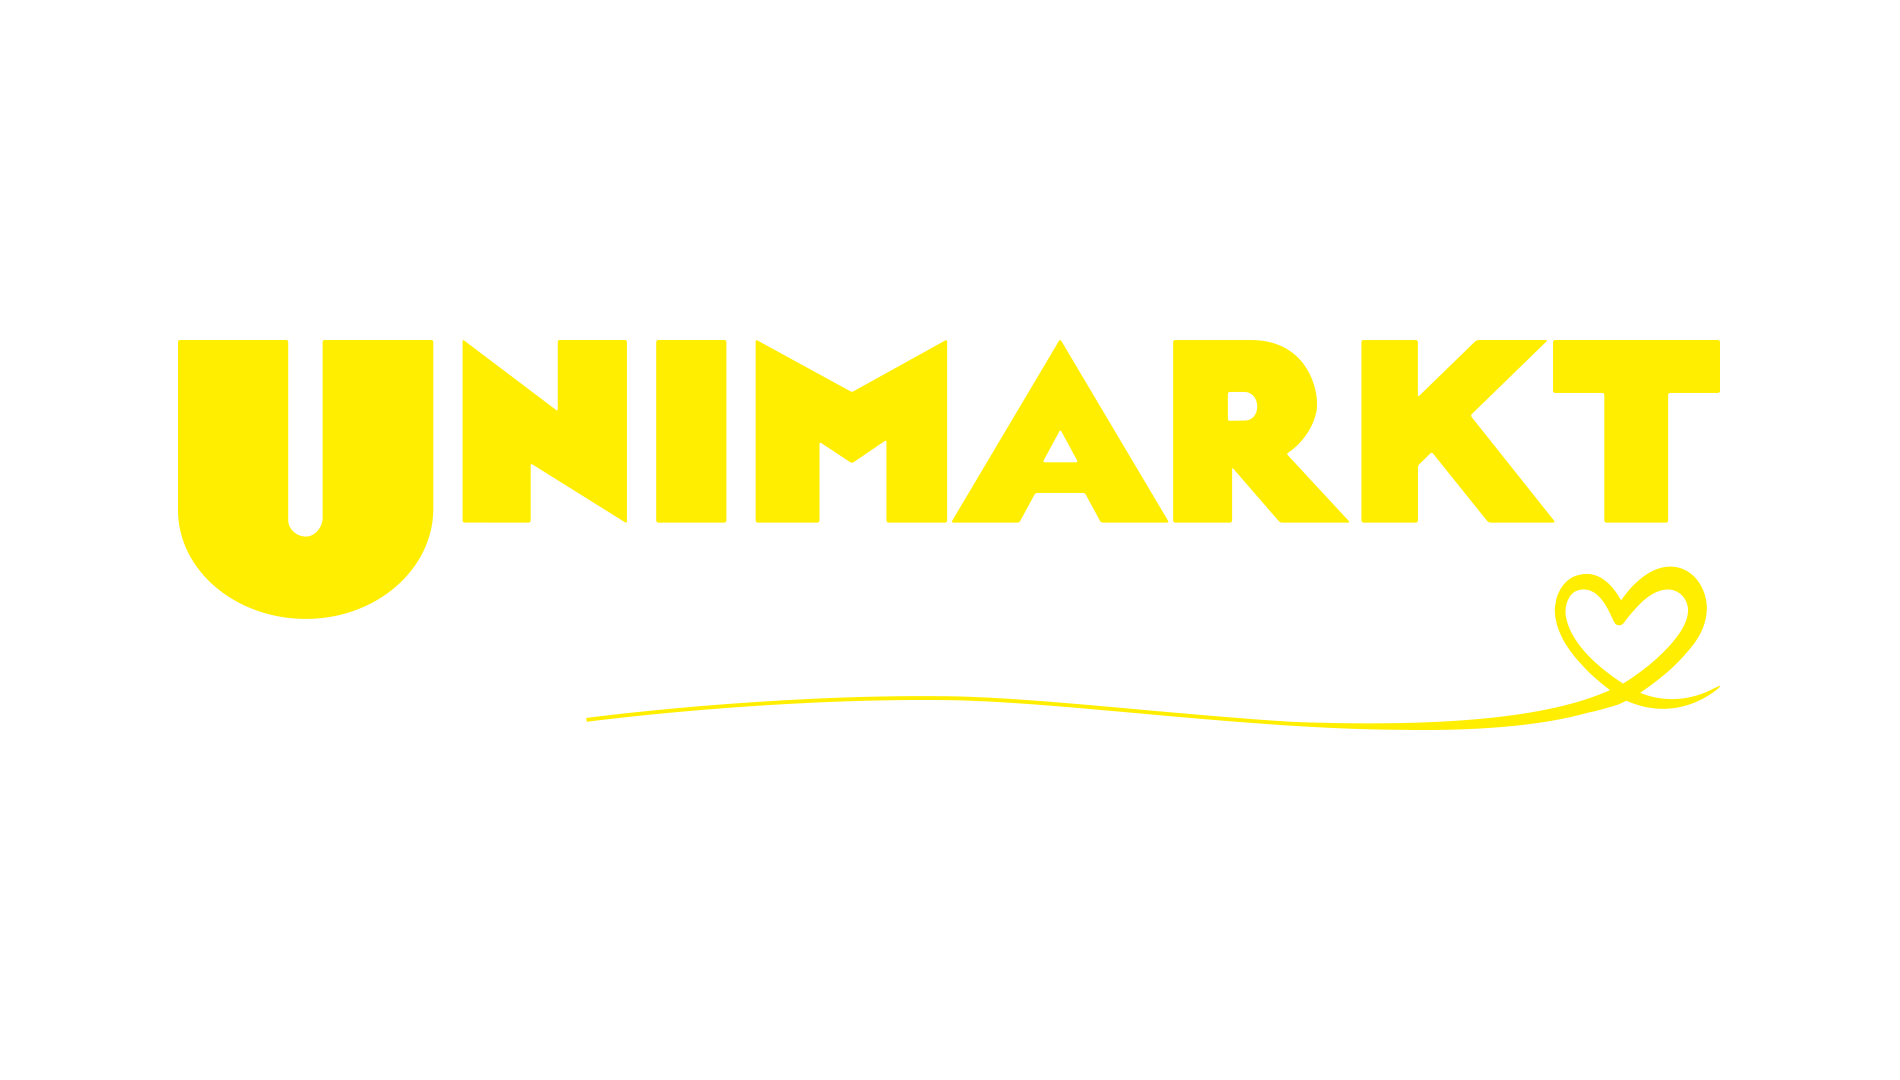 Unimarkt-bild-quer-Logo-genussverbindet